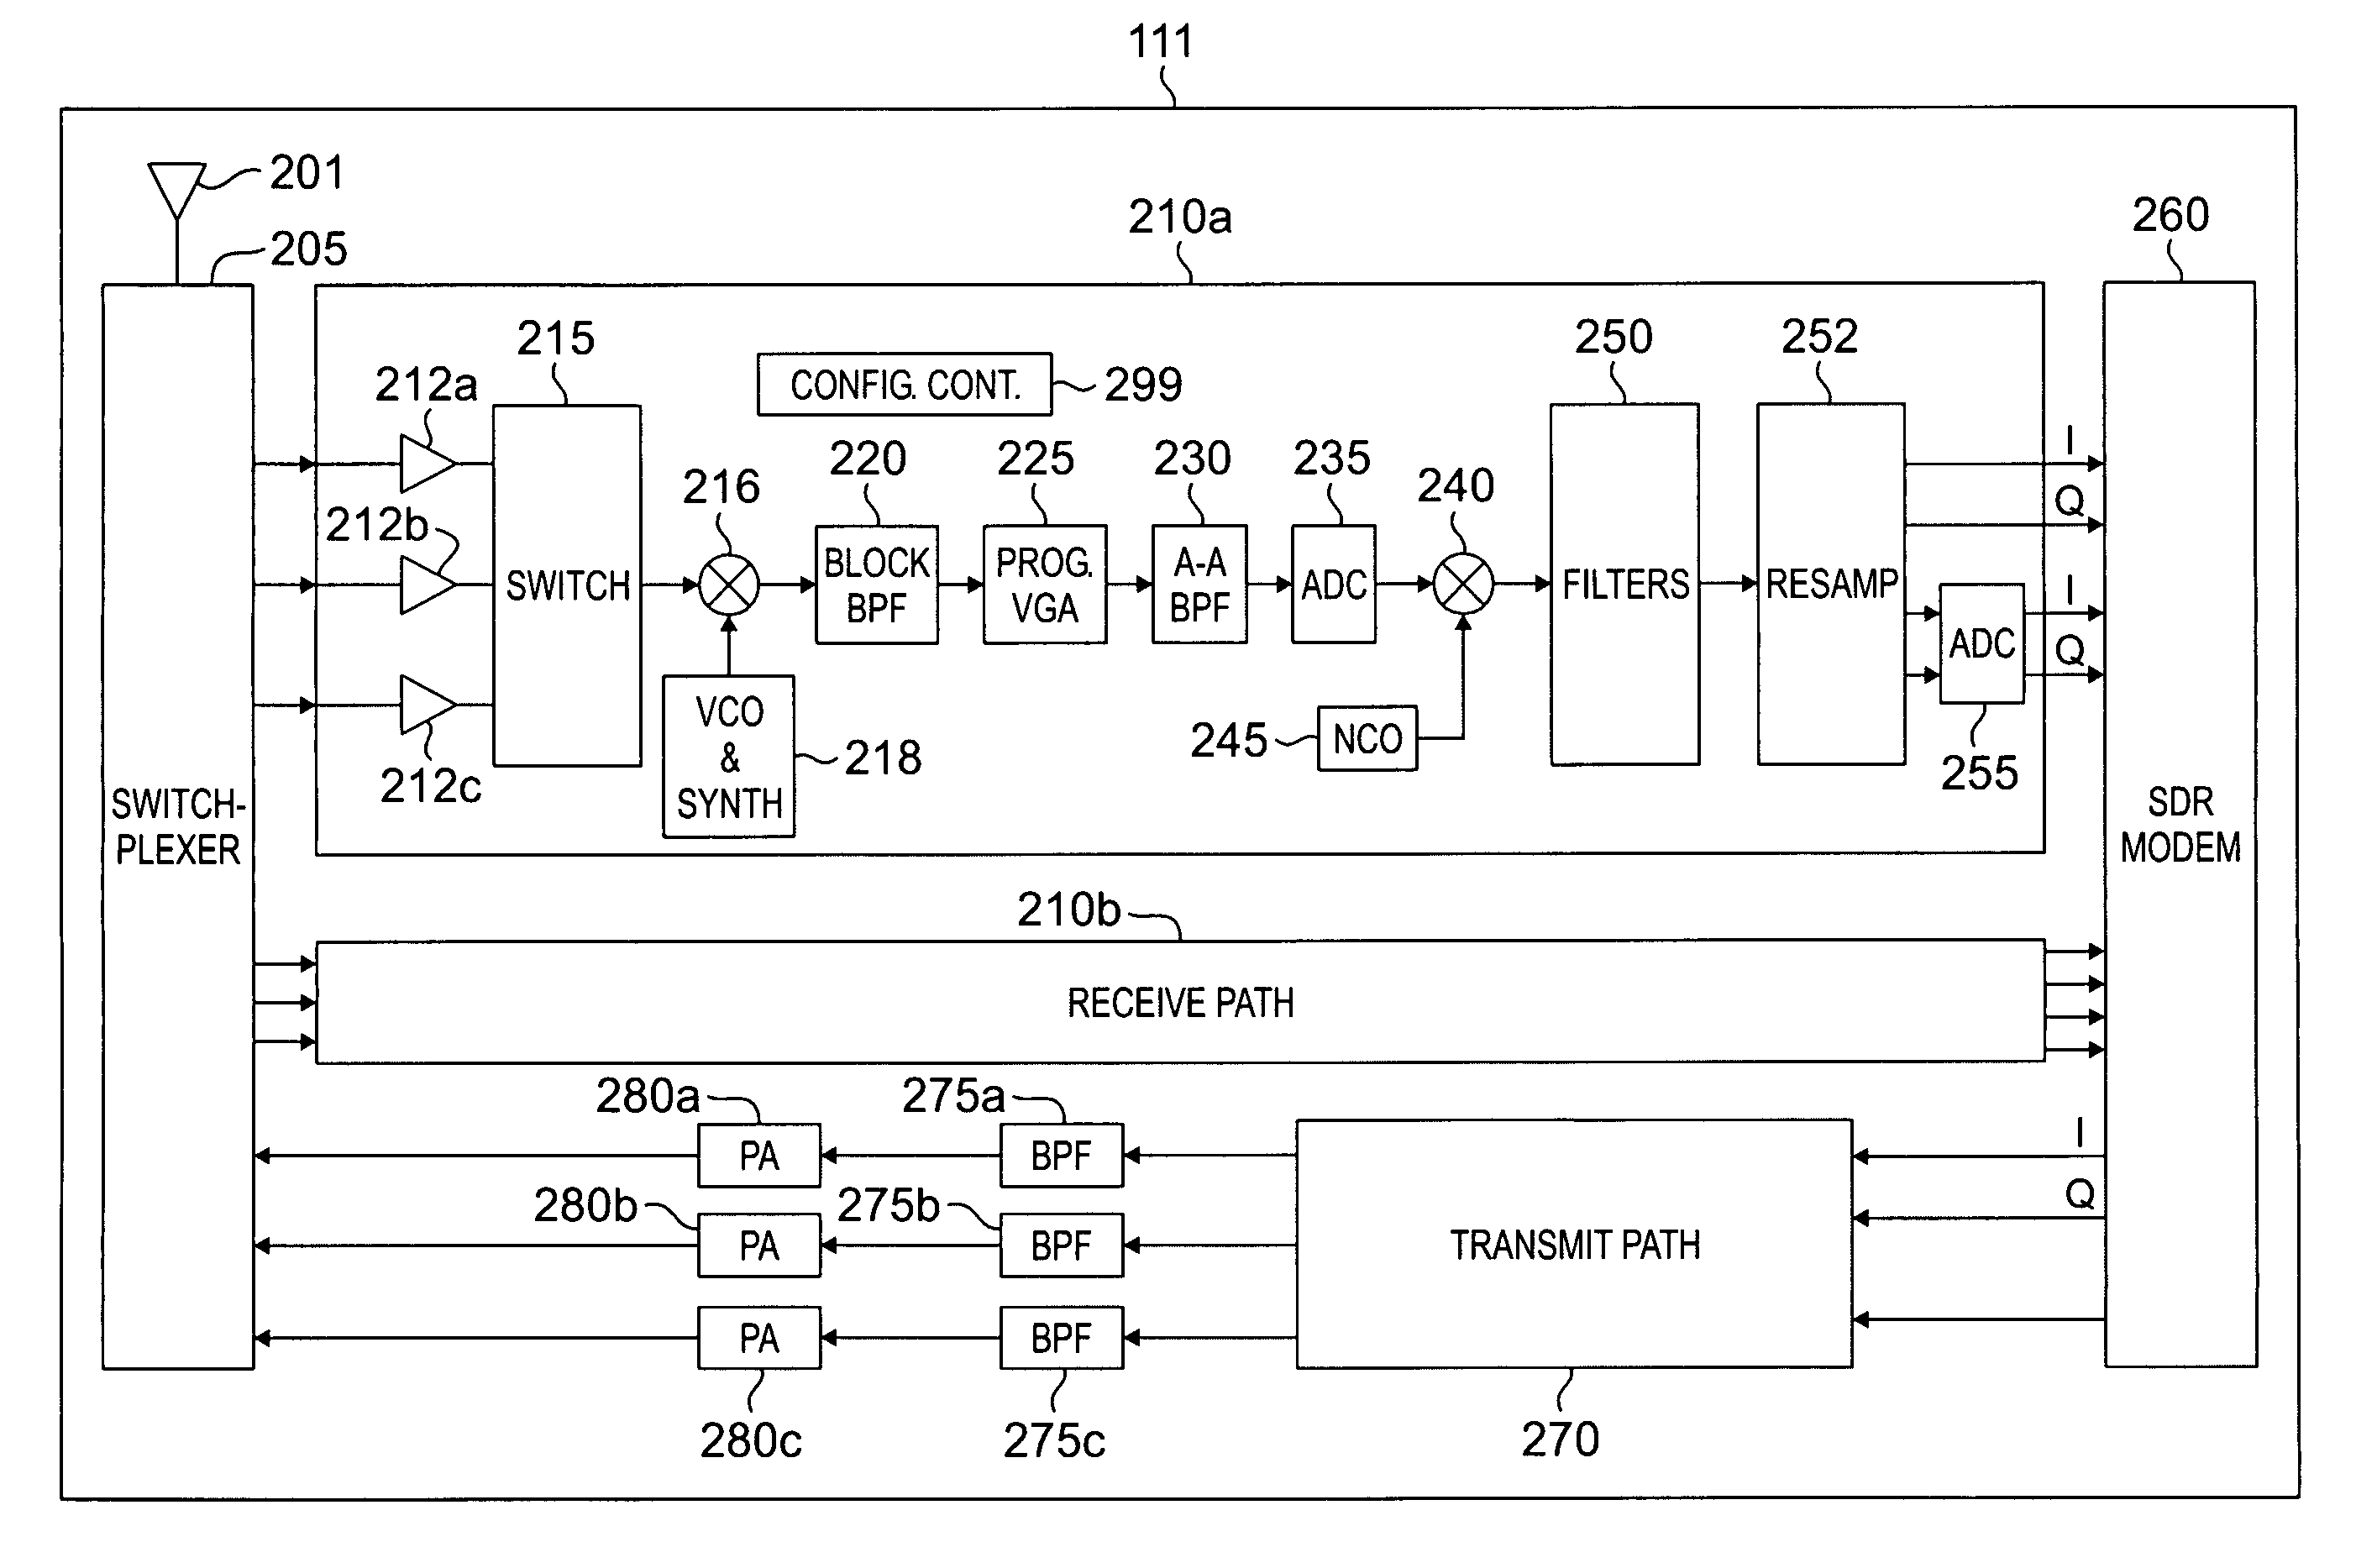 Common radio architecture for multi-mode multi-band applications